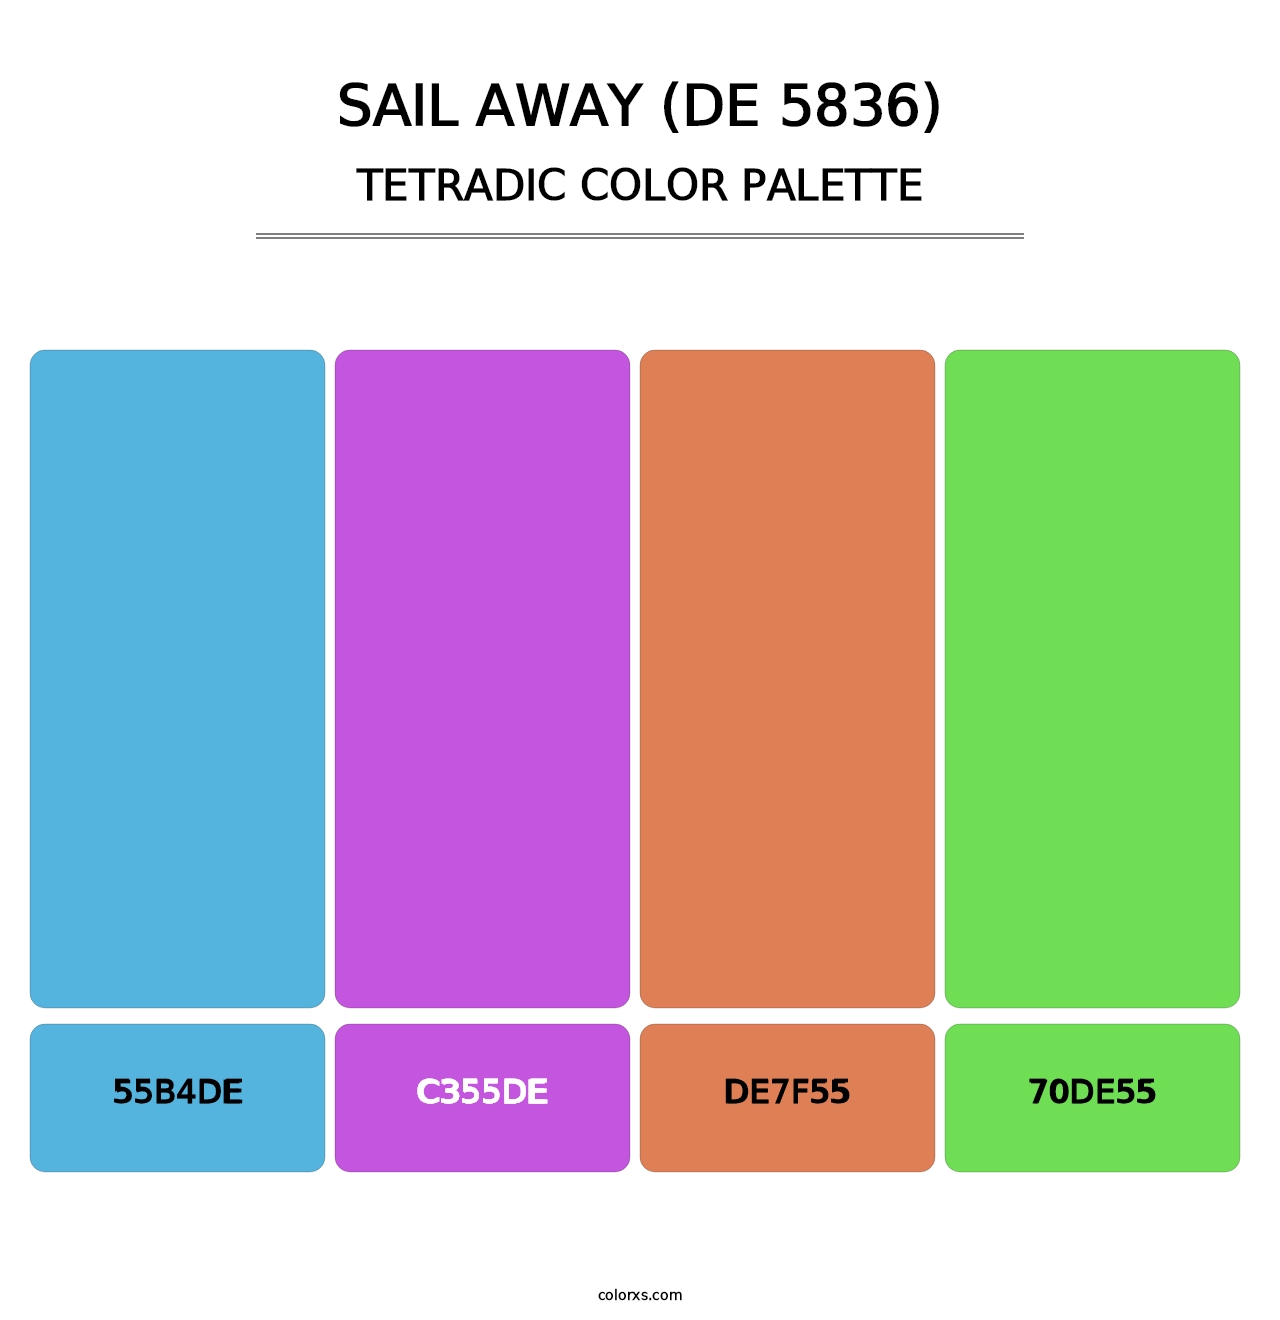 Sail Away (DE 5836) - Tetradic Color Palette